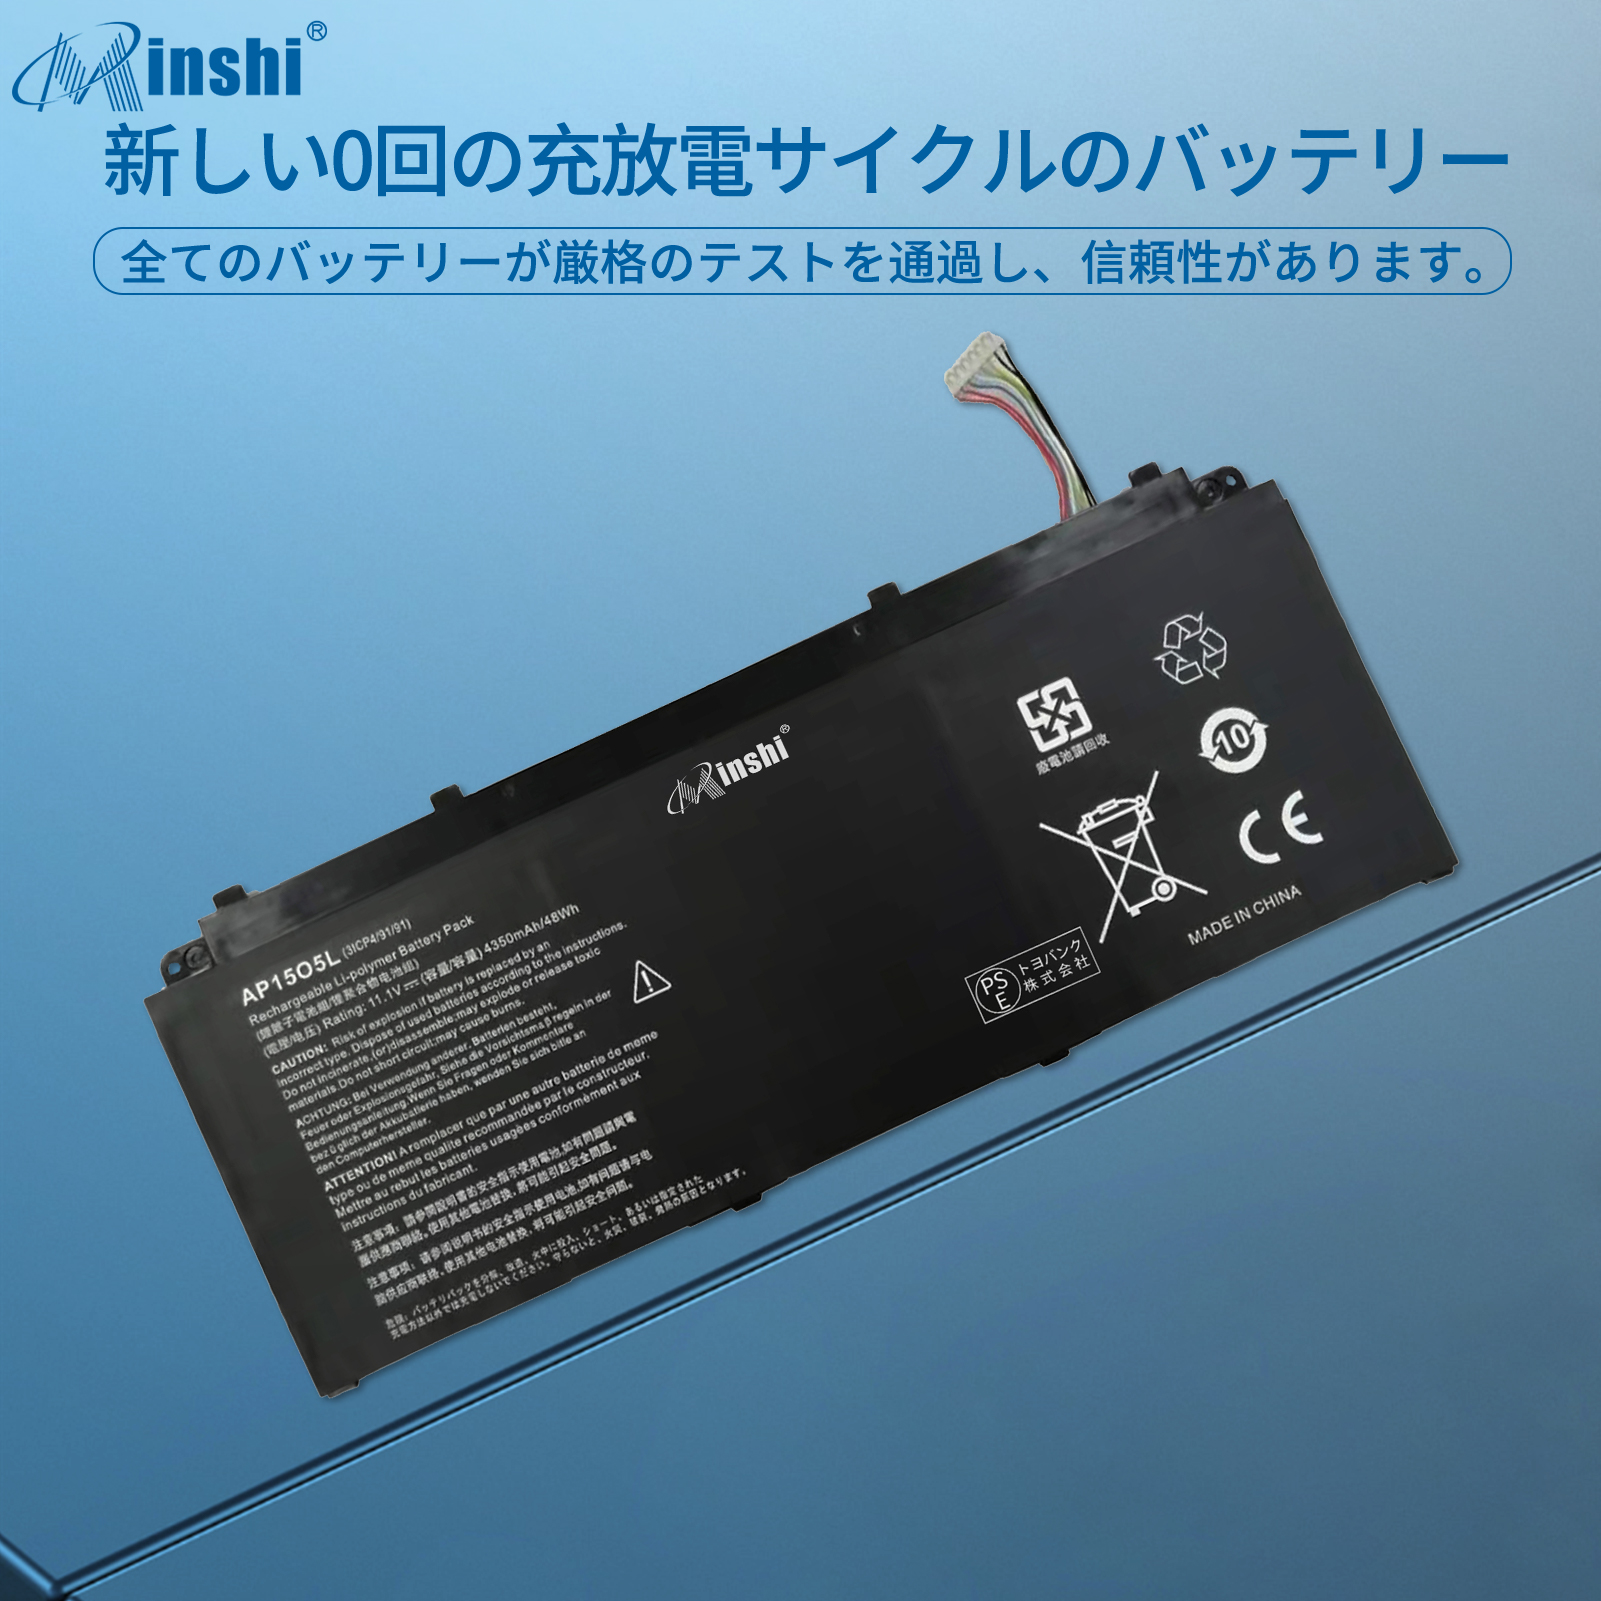  minshi ACER AP15O5L 対応 互換バッテリー 4350mAh PSE認定済 高品質交換用バッテリー